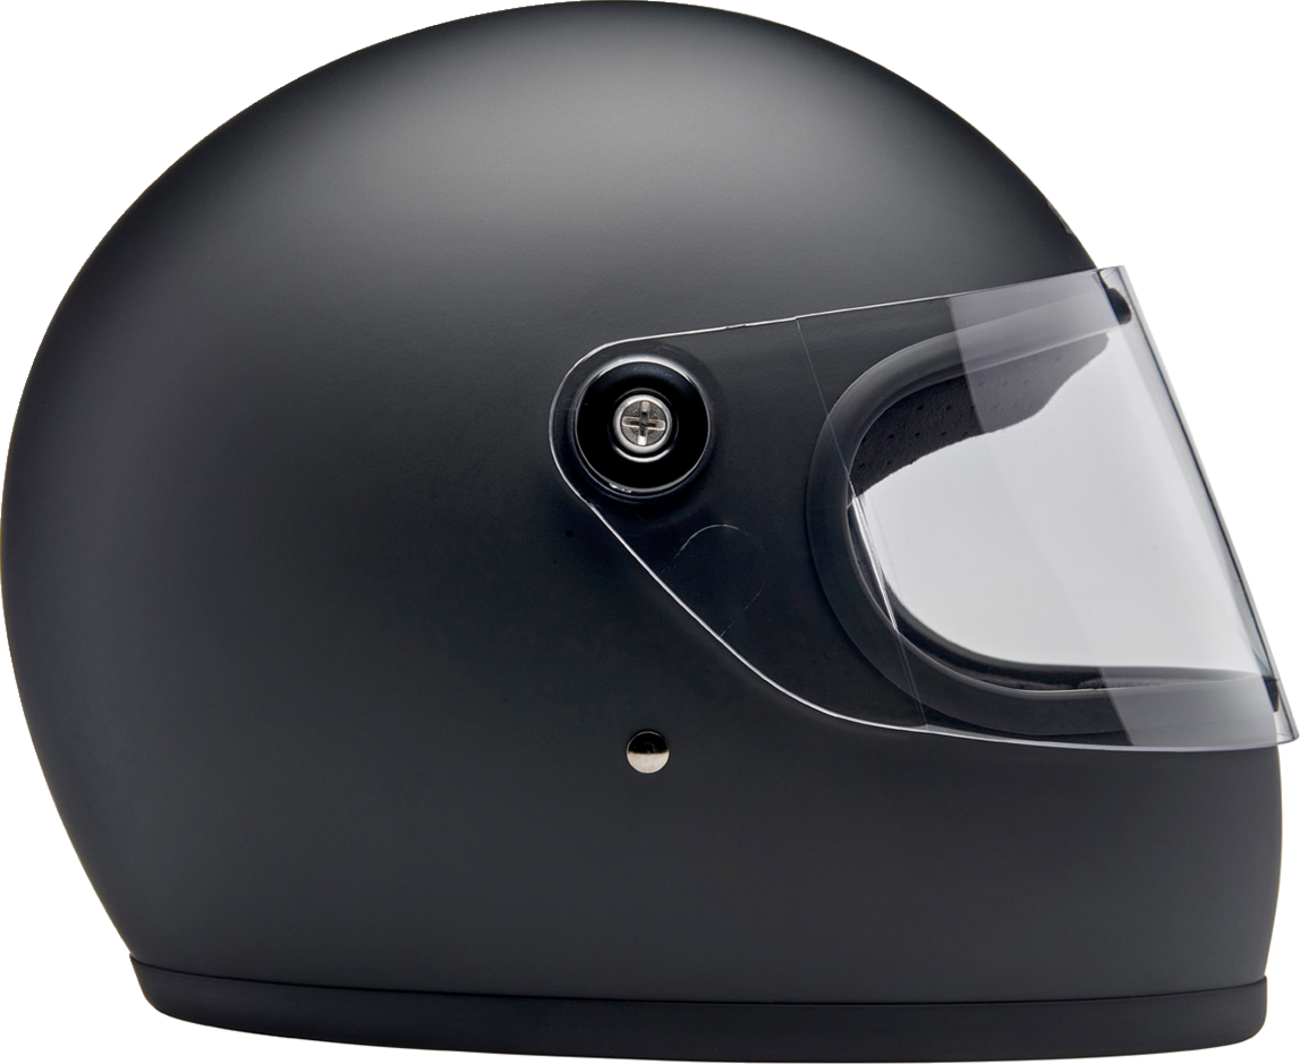 BILTWELL Gringo S Helmet - Flat Black - XS 1003-201-501